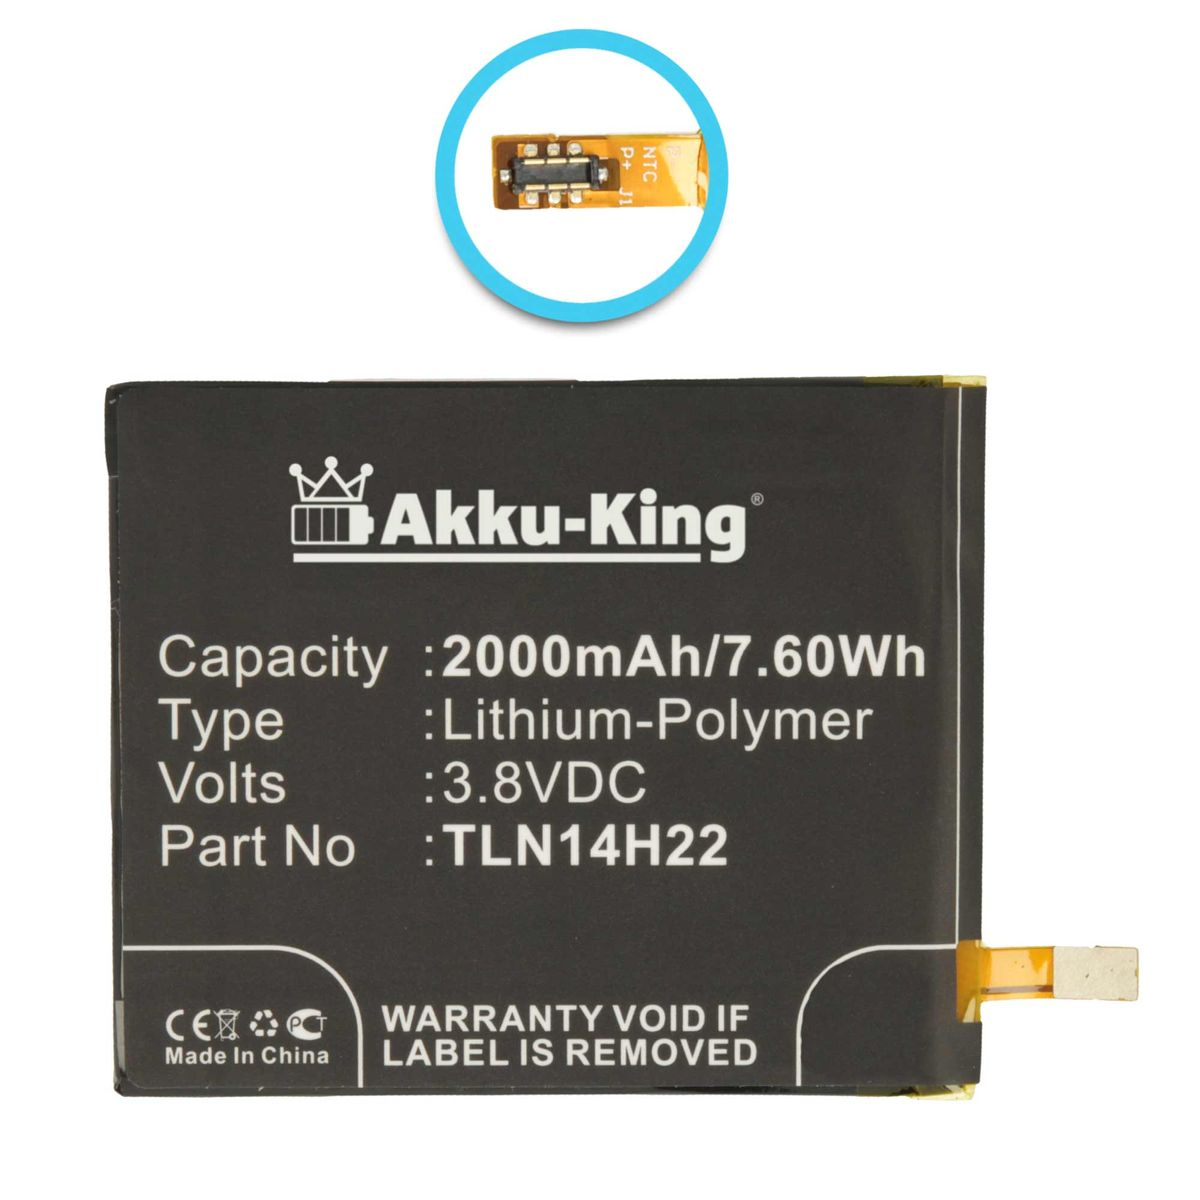 TLE14E20 kompatibel Li-Polymer Akku mit Handy-Akku, AKKU-KING Wiko 2000mAh 3.8 Volt,